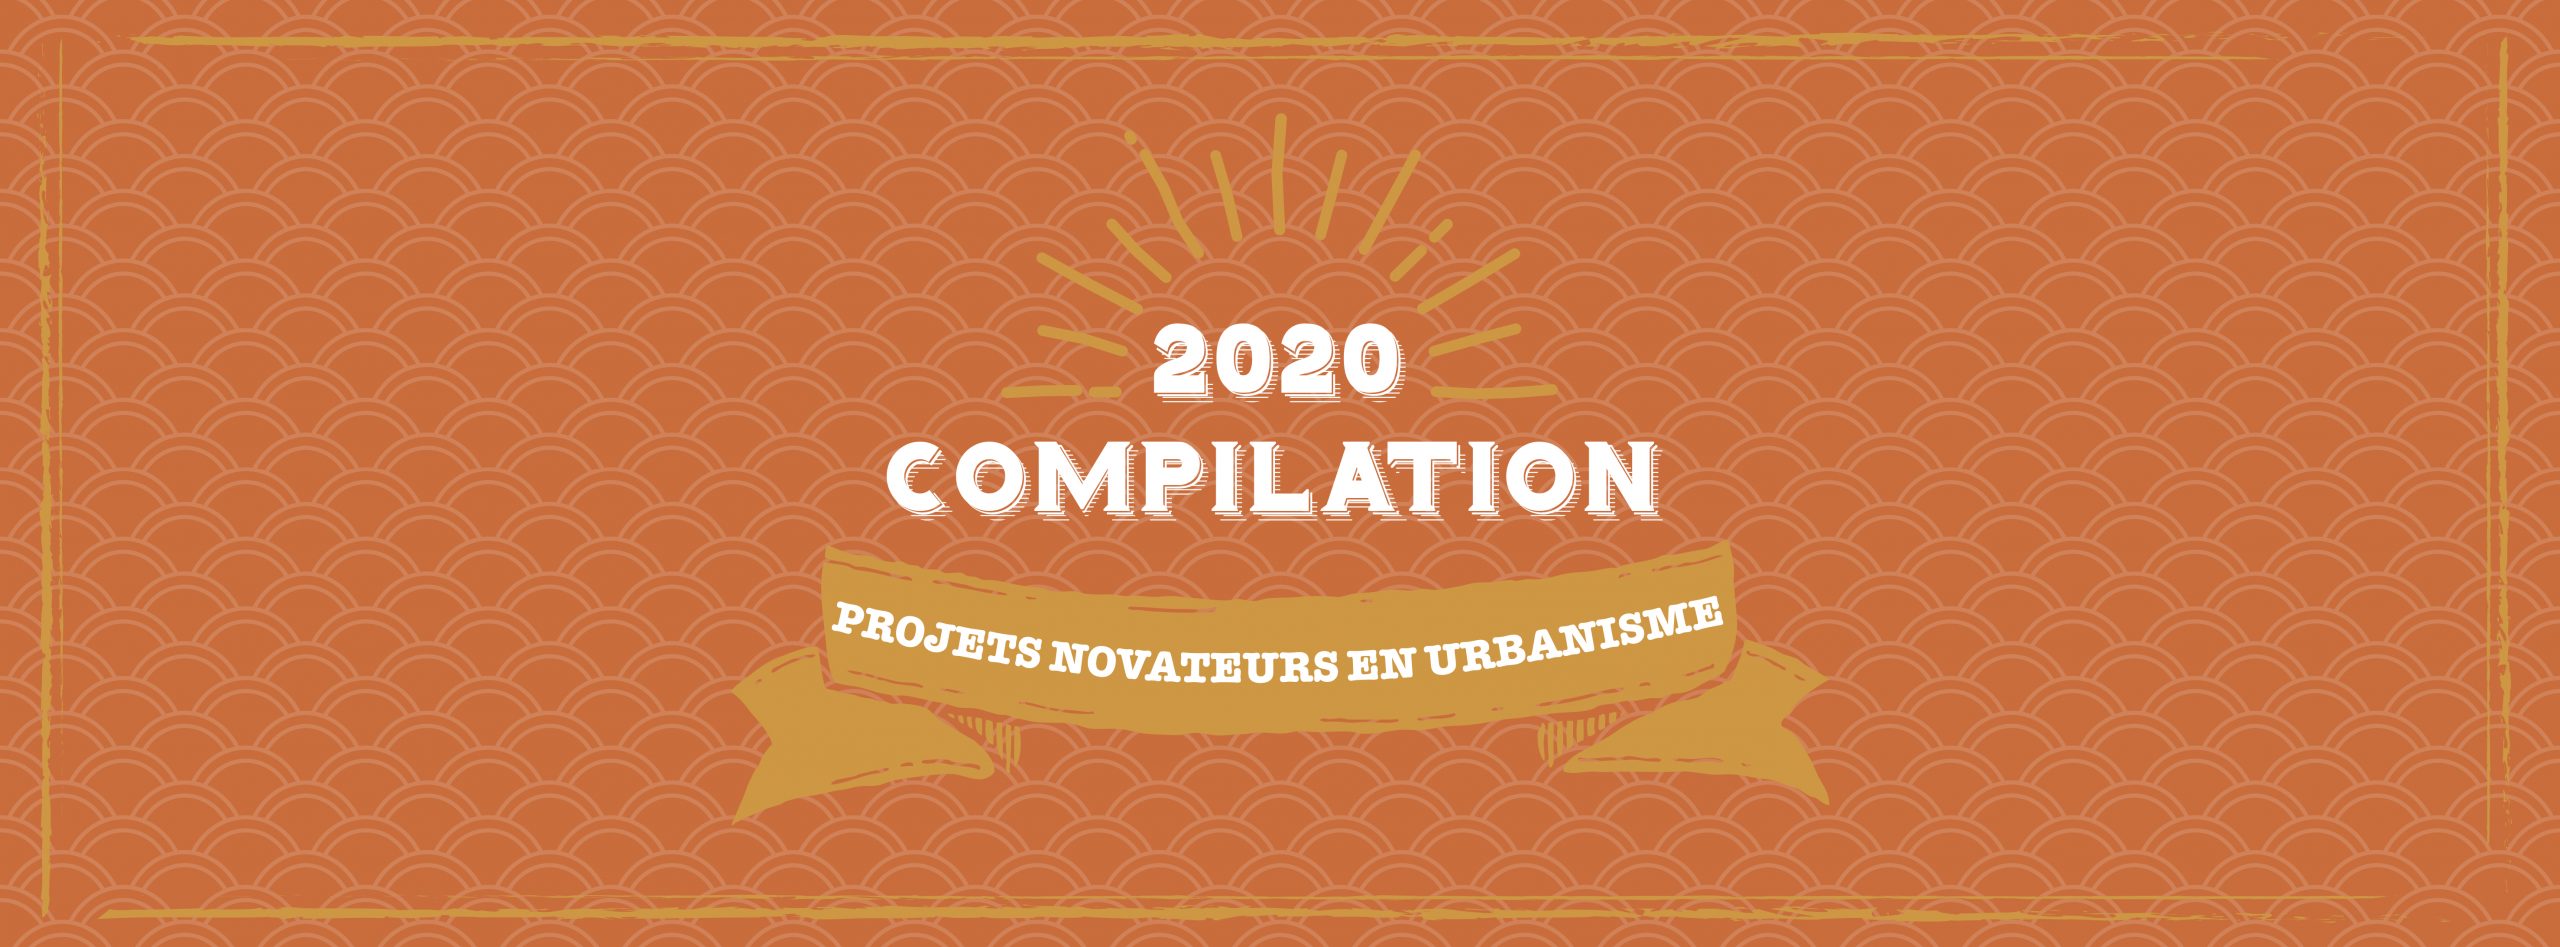 OUQ - Appel à candidatures – Compilation des projets novateurs en urbanisme 2020